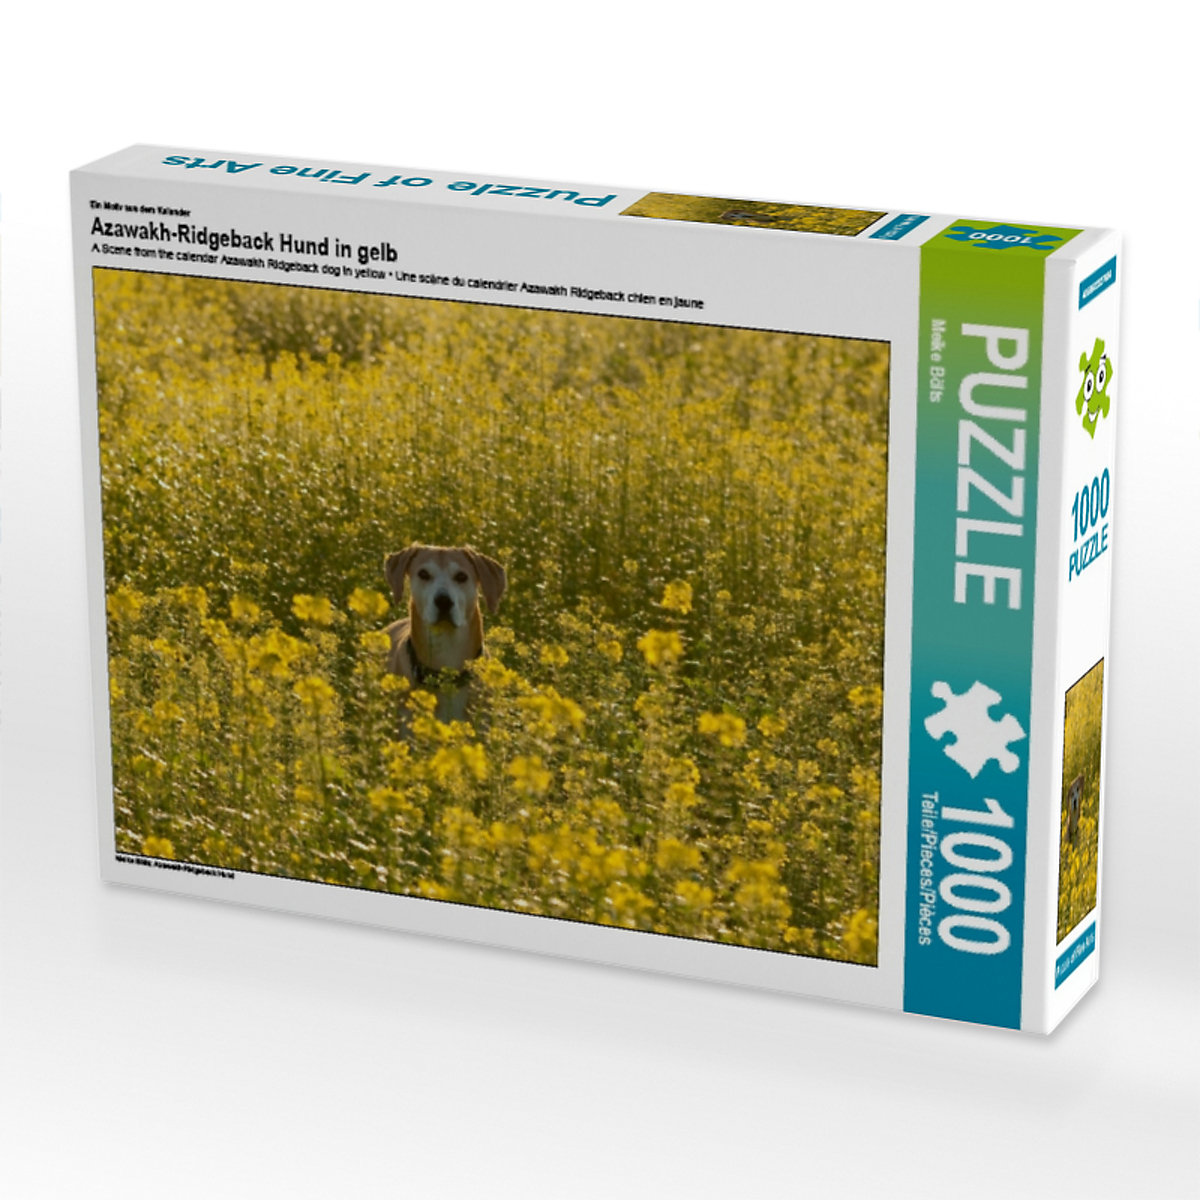 CALVENDO® Puzzle CALVENDO Puzzle Azawakh-Ridgeback Hund in gelb 1000 Teile Foto-Puzzle für glückliche Stunden